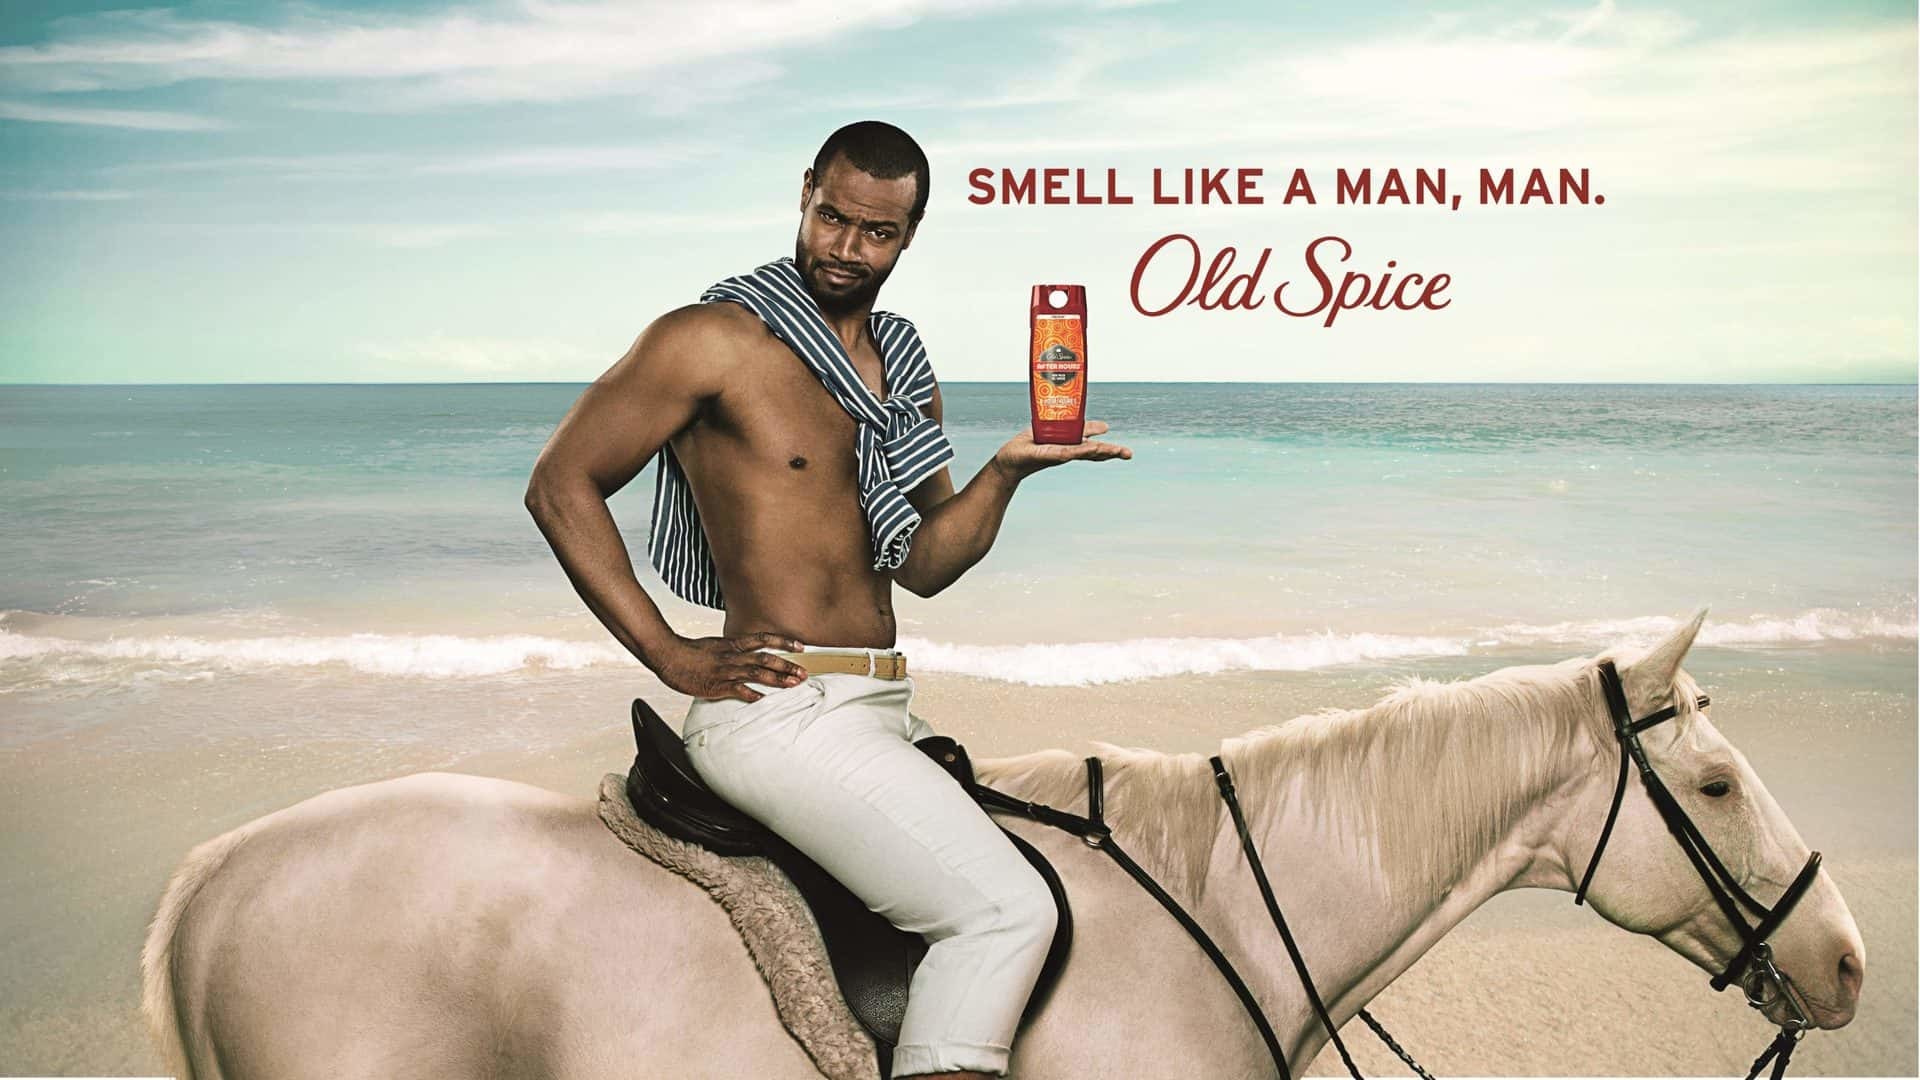 Реклама компании Old Spice